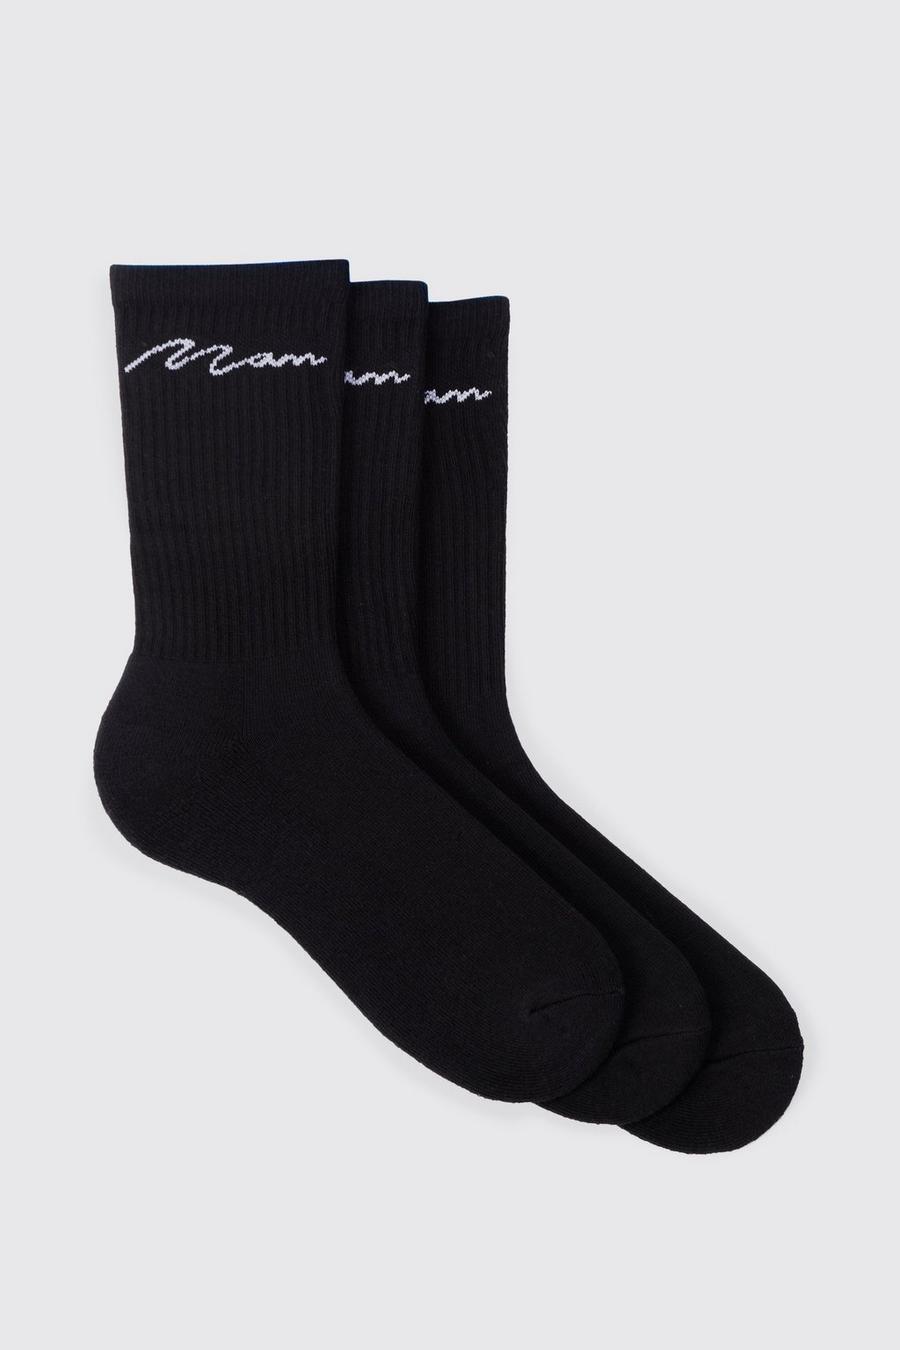 Pack de 3 pares de calcetines deportivos con firma MAN, Black negro